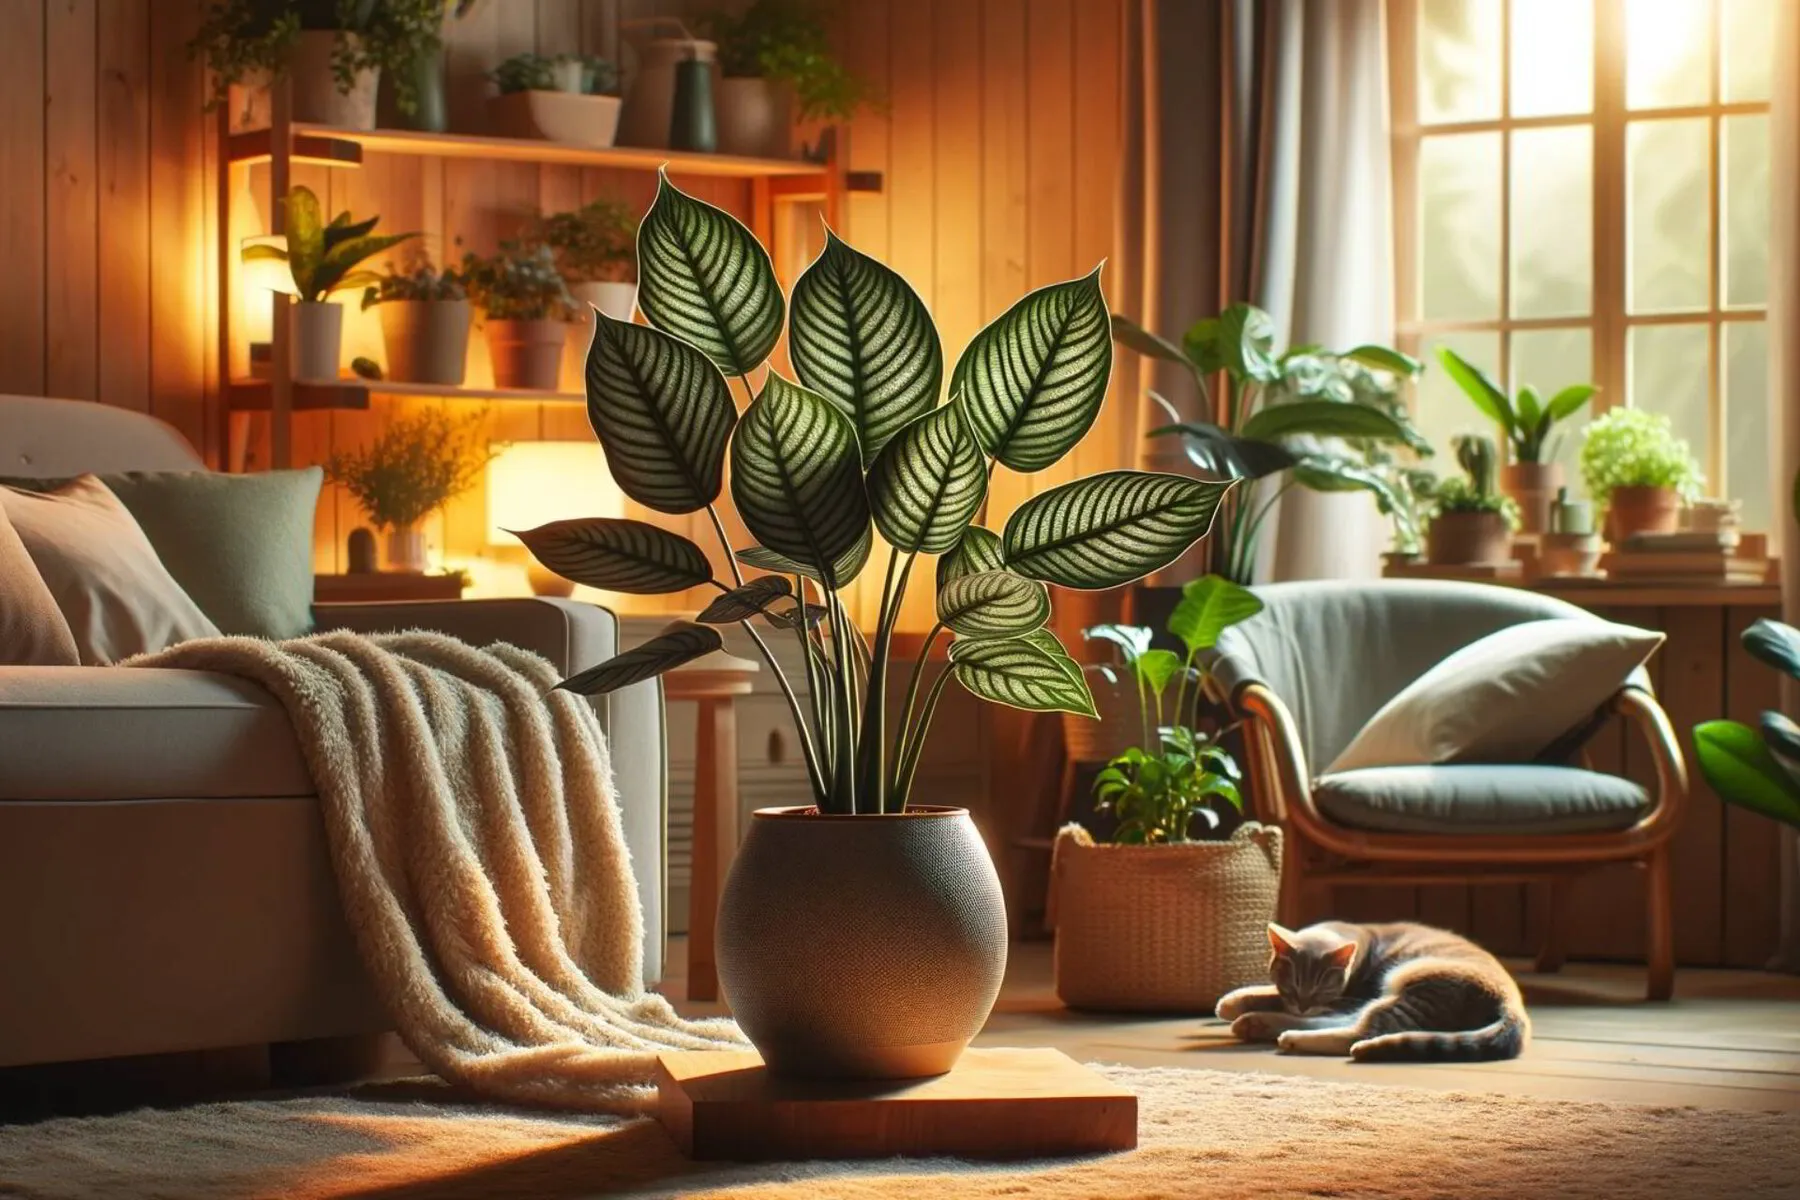 A cozy home interior showcasing a prayer plant